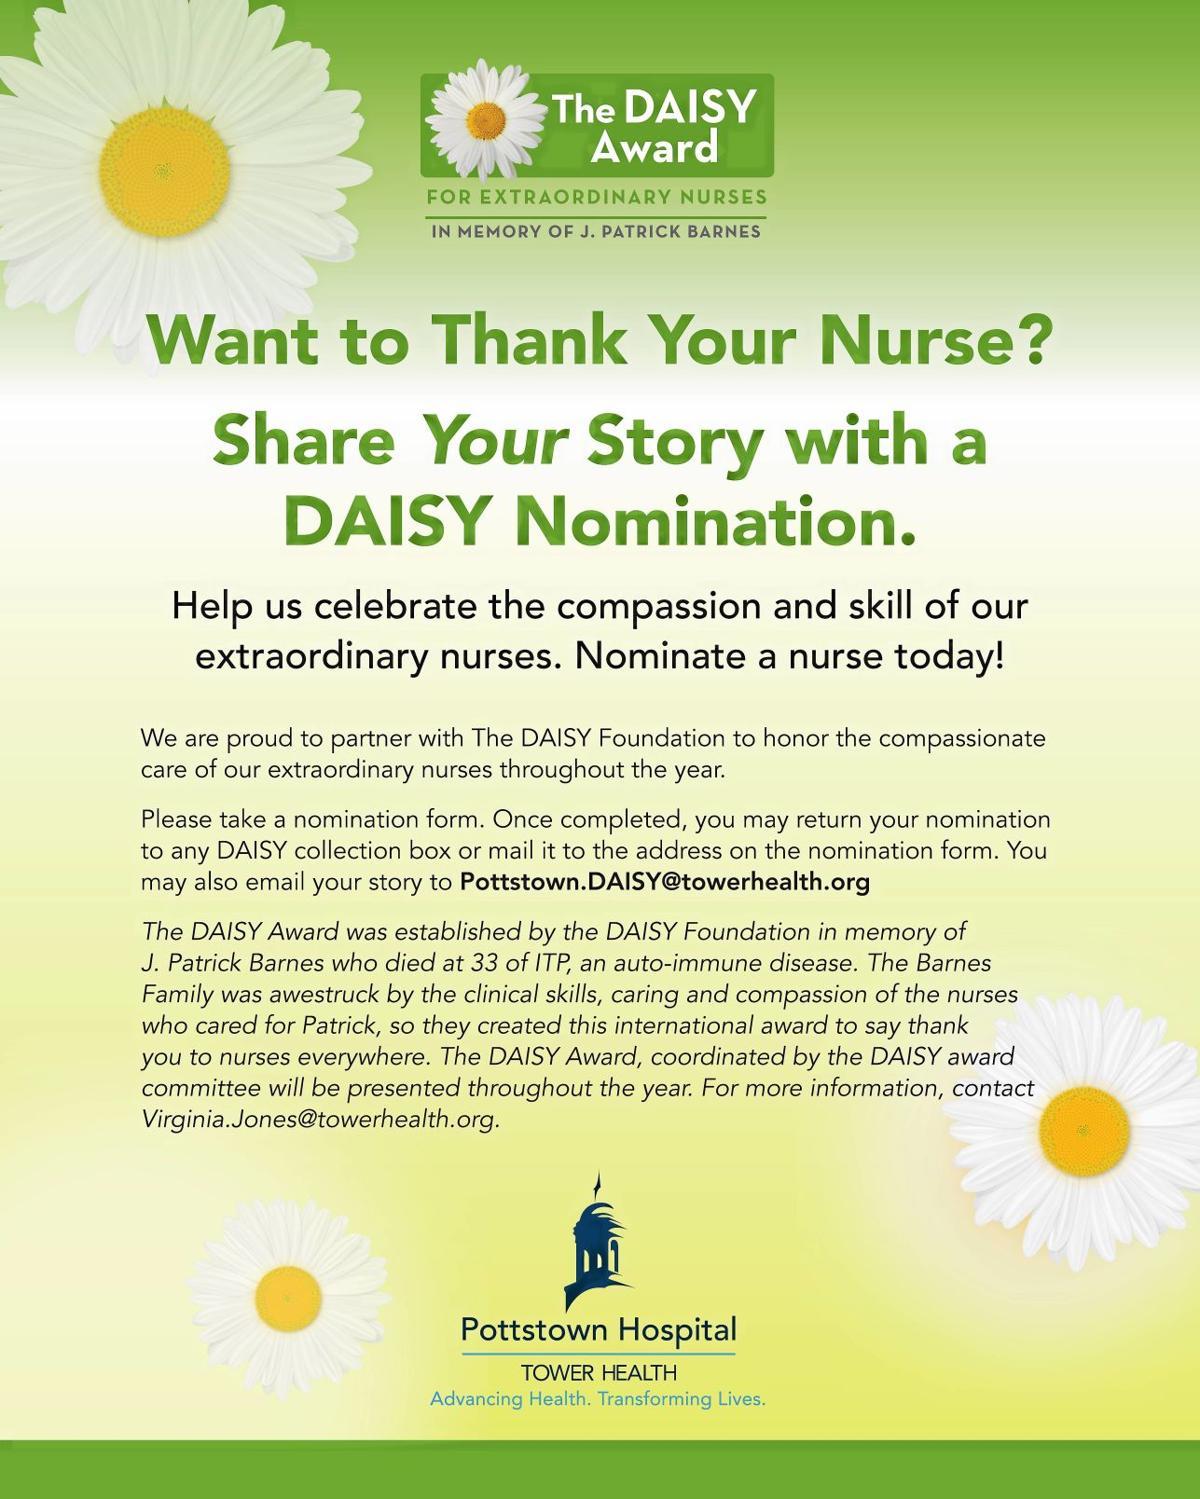 Daisy Award Logo - Pottstown Hospital implementing DAISY Award to recognize nurses